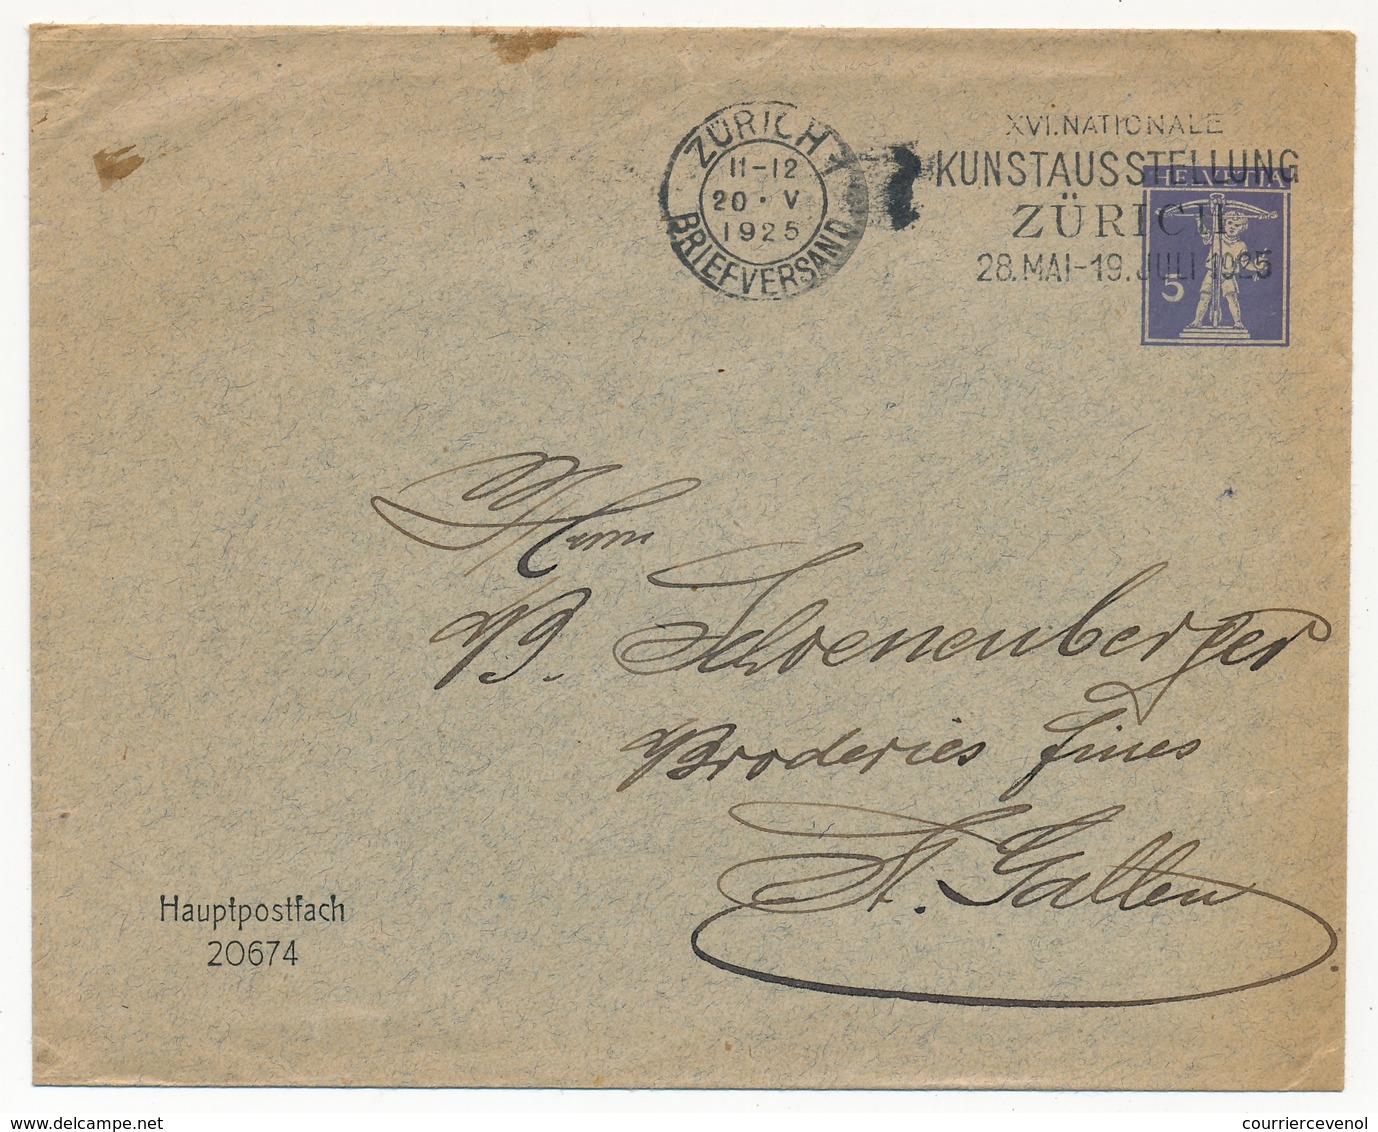 SUISSE - Entier Postal Enveloppe 5c - Mention Imprimée "Hauptpostfach 20674" - Zürich 1925 - Entiers Postaux